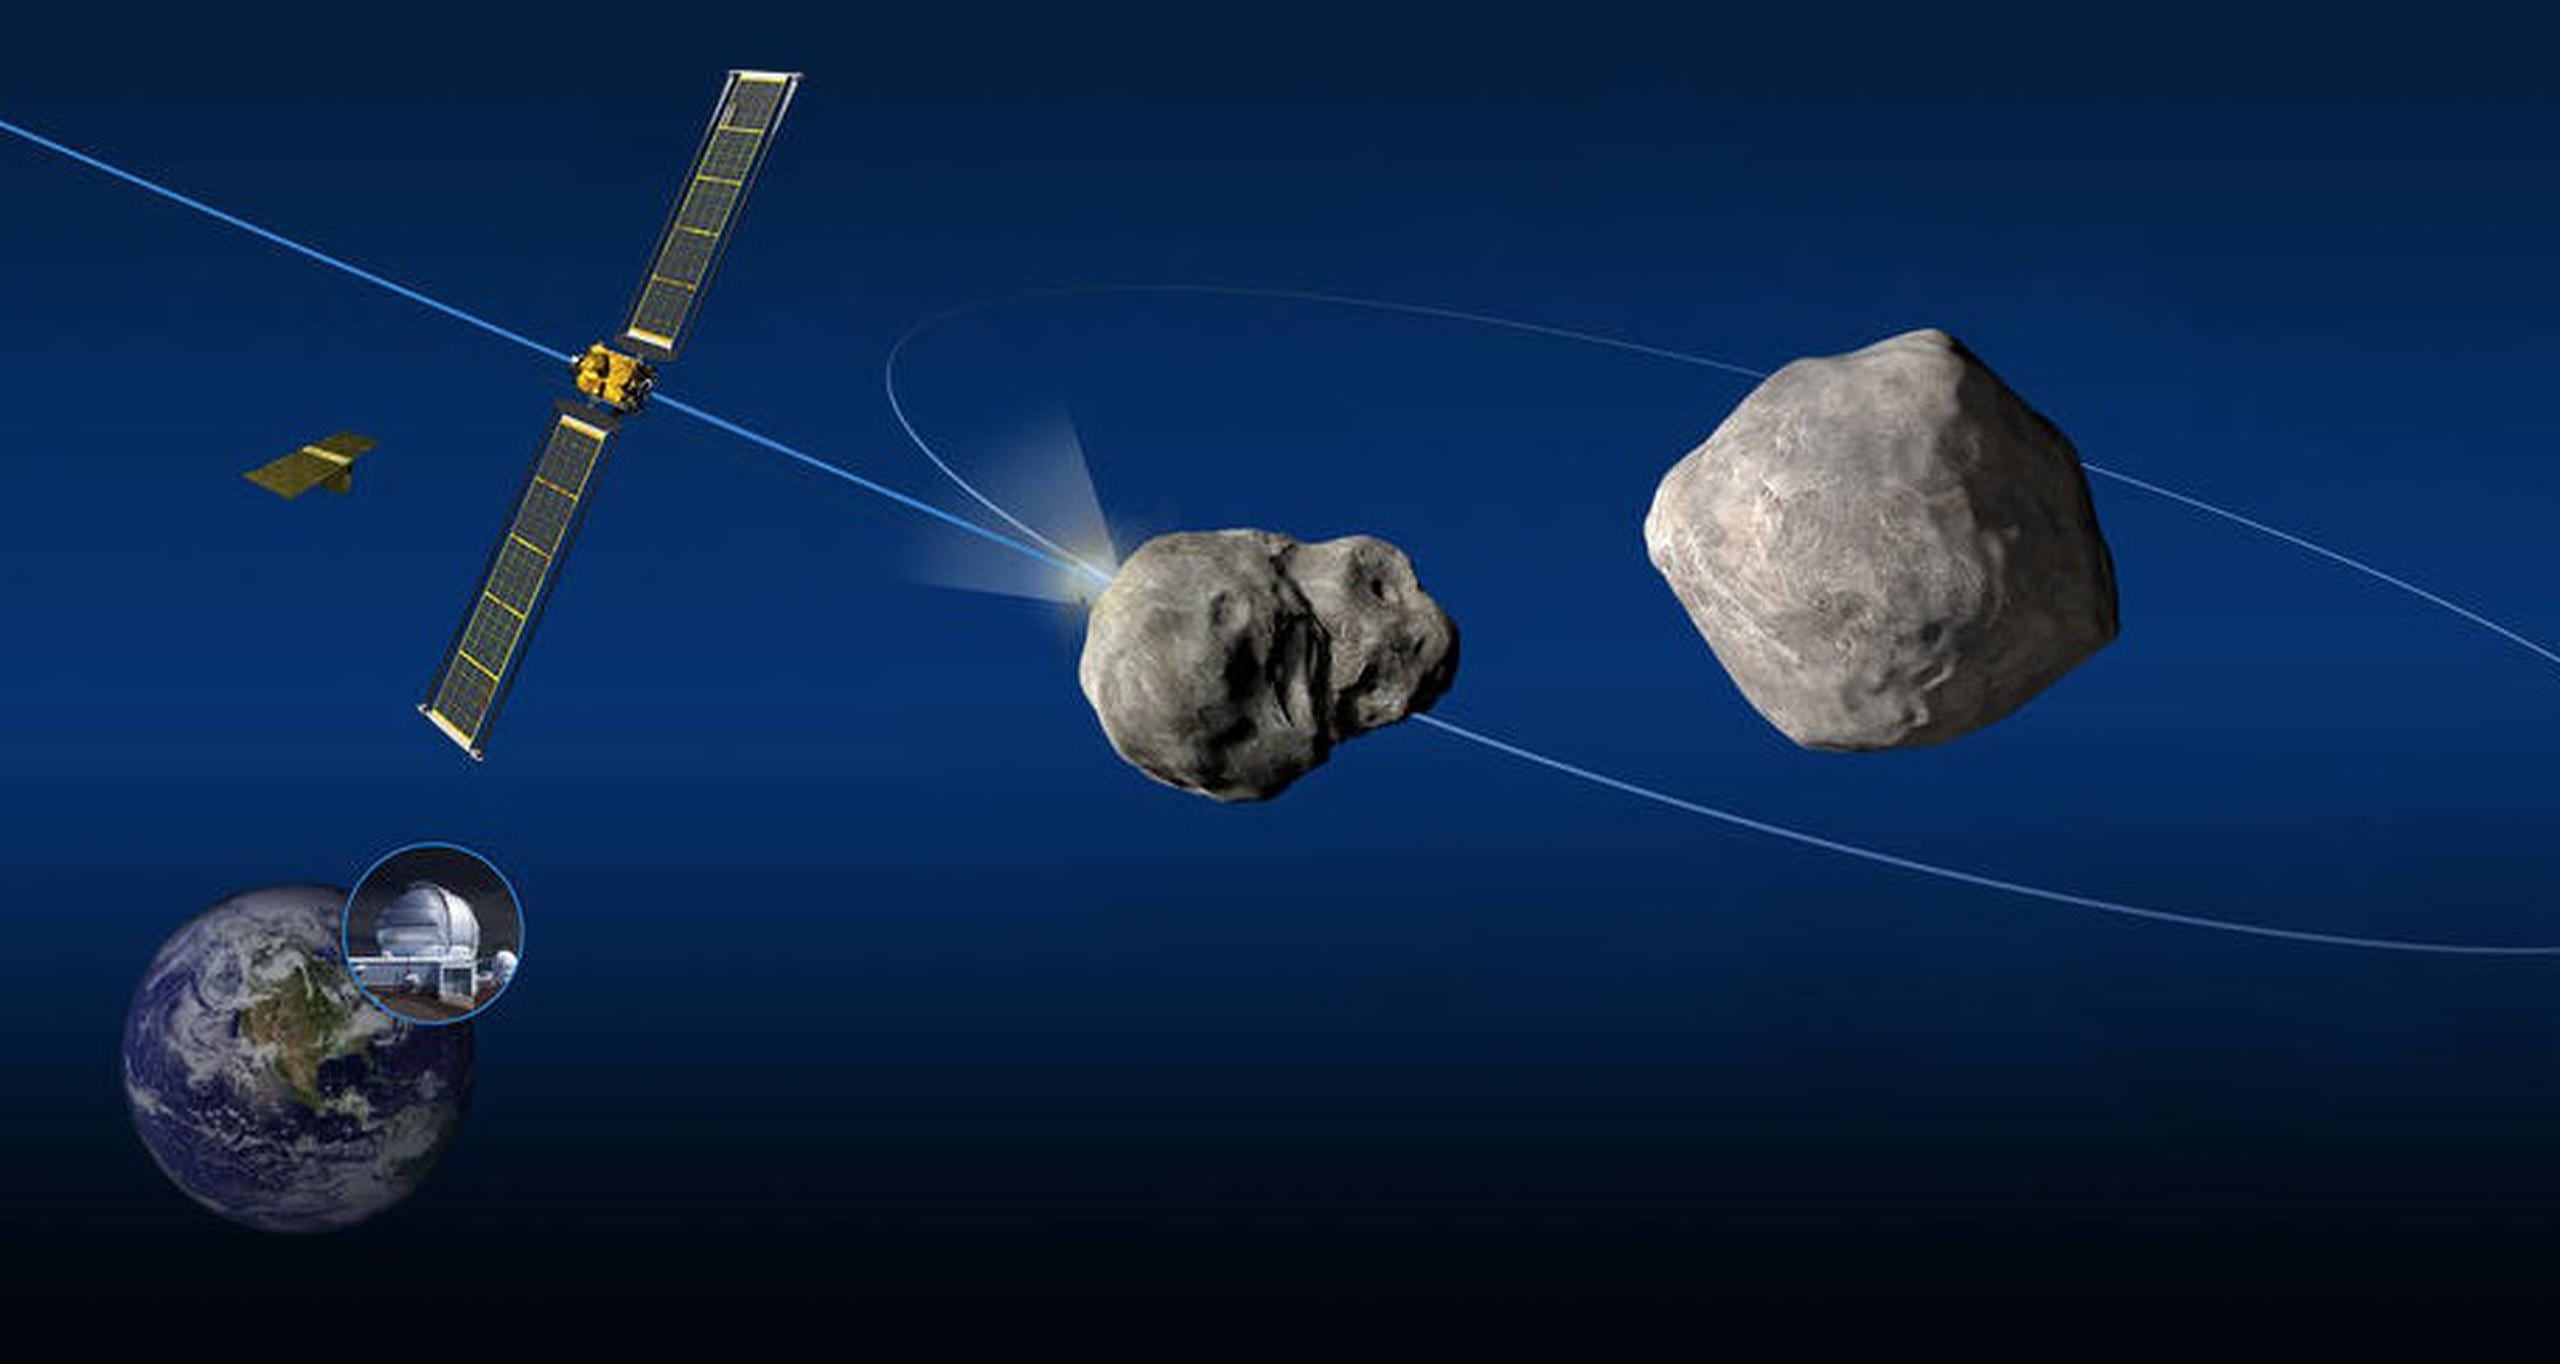 Se trata de la misión DART (Double Asteroid Redirection Test) una prueba para determinar qué efecto si alguno ocasionaría el impactar un asteroide, en cuanto a alterar su trayectoria y/o velocidad